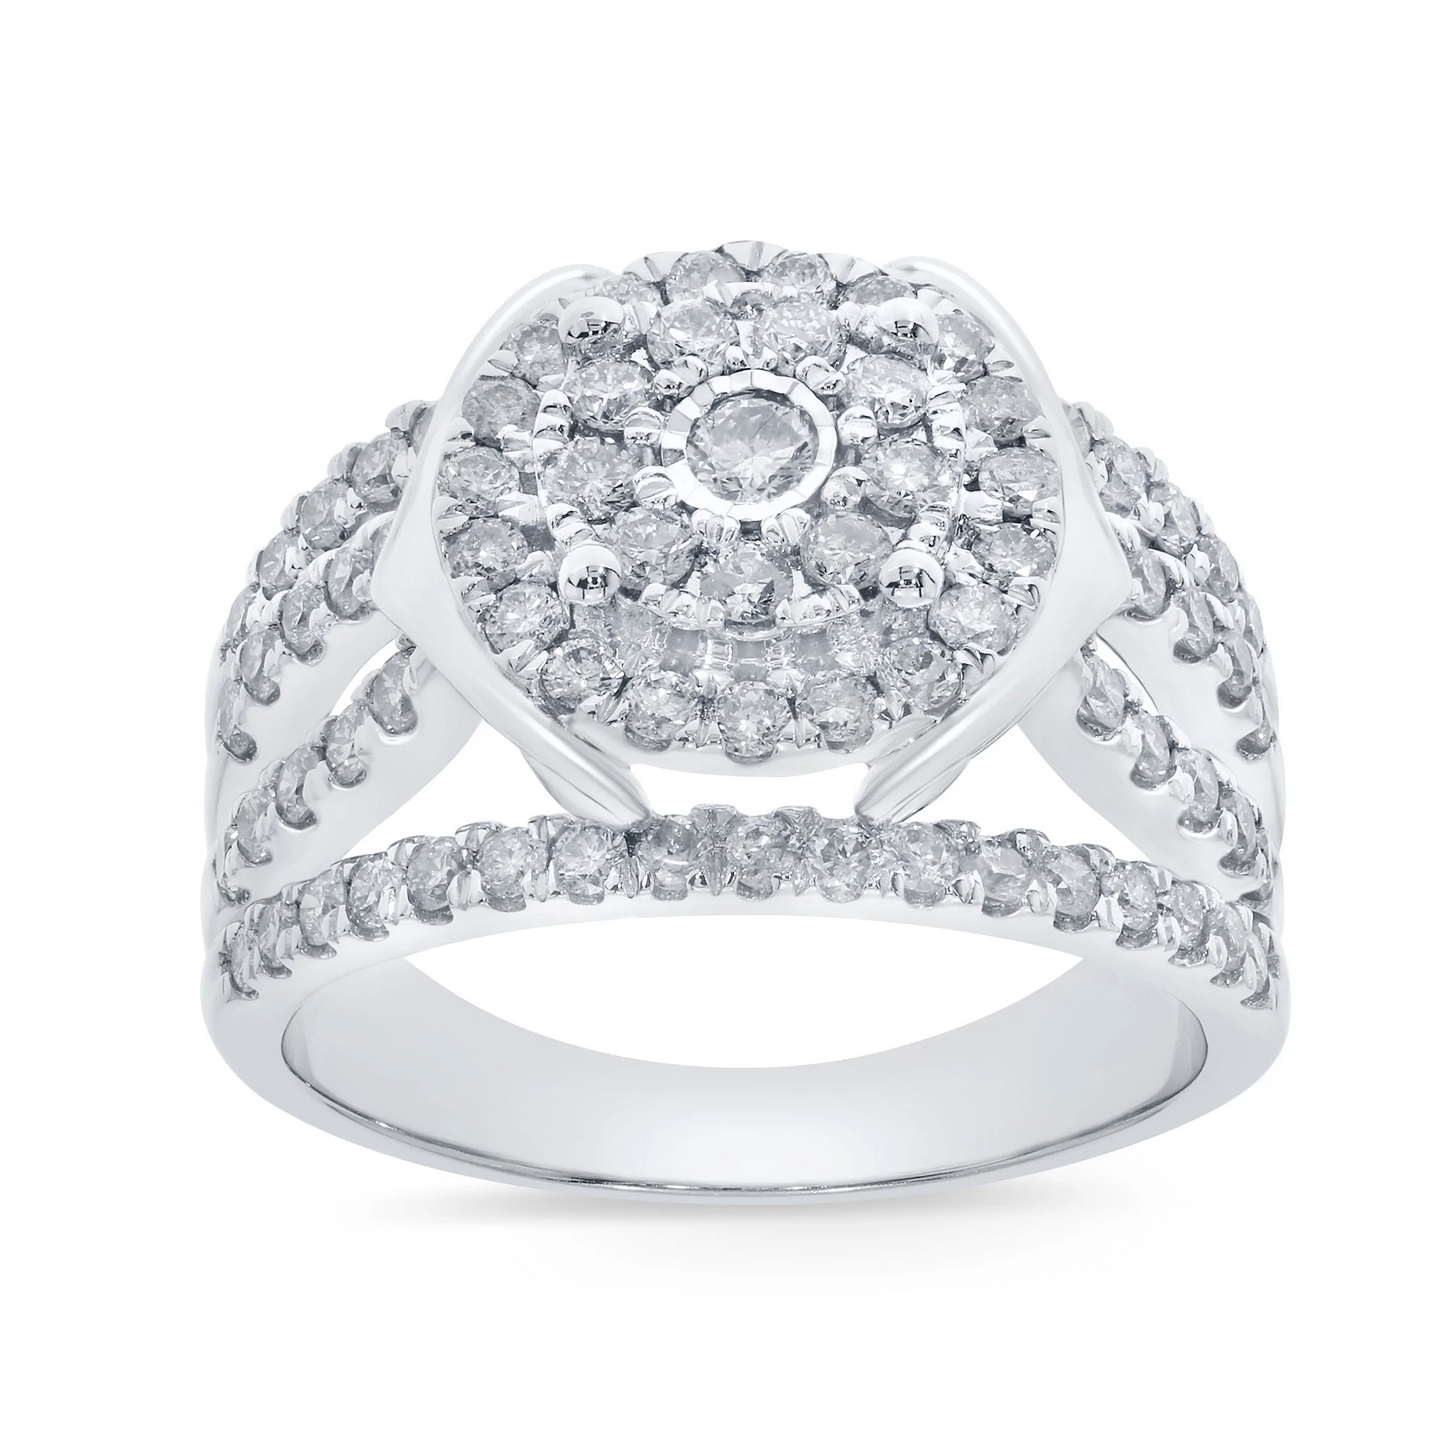 10K WHITE GOLD 1.50 CARAT WOMEN REAL DIAMOND ENGAGEMENT RING WEDDING RING BRIDAL